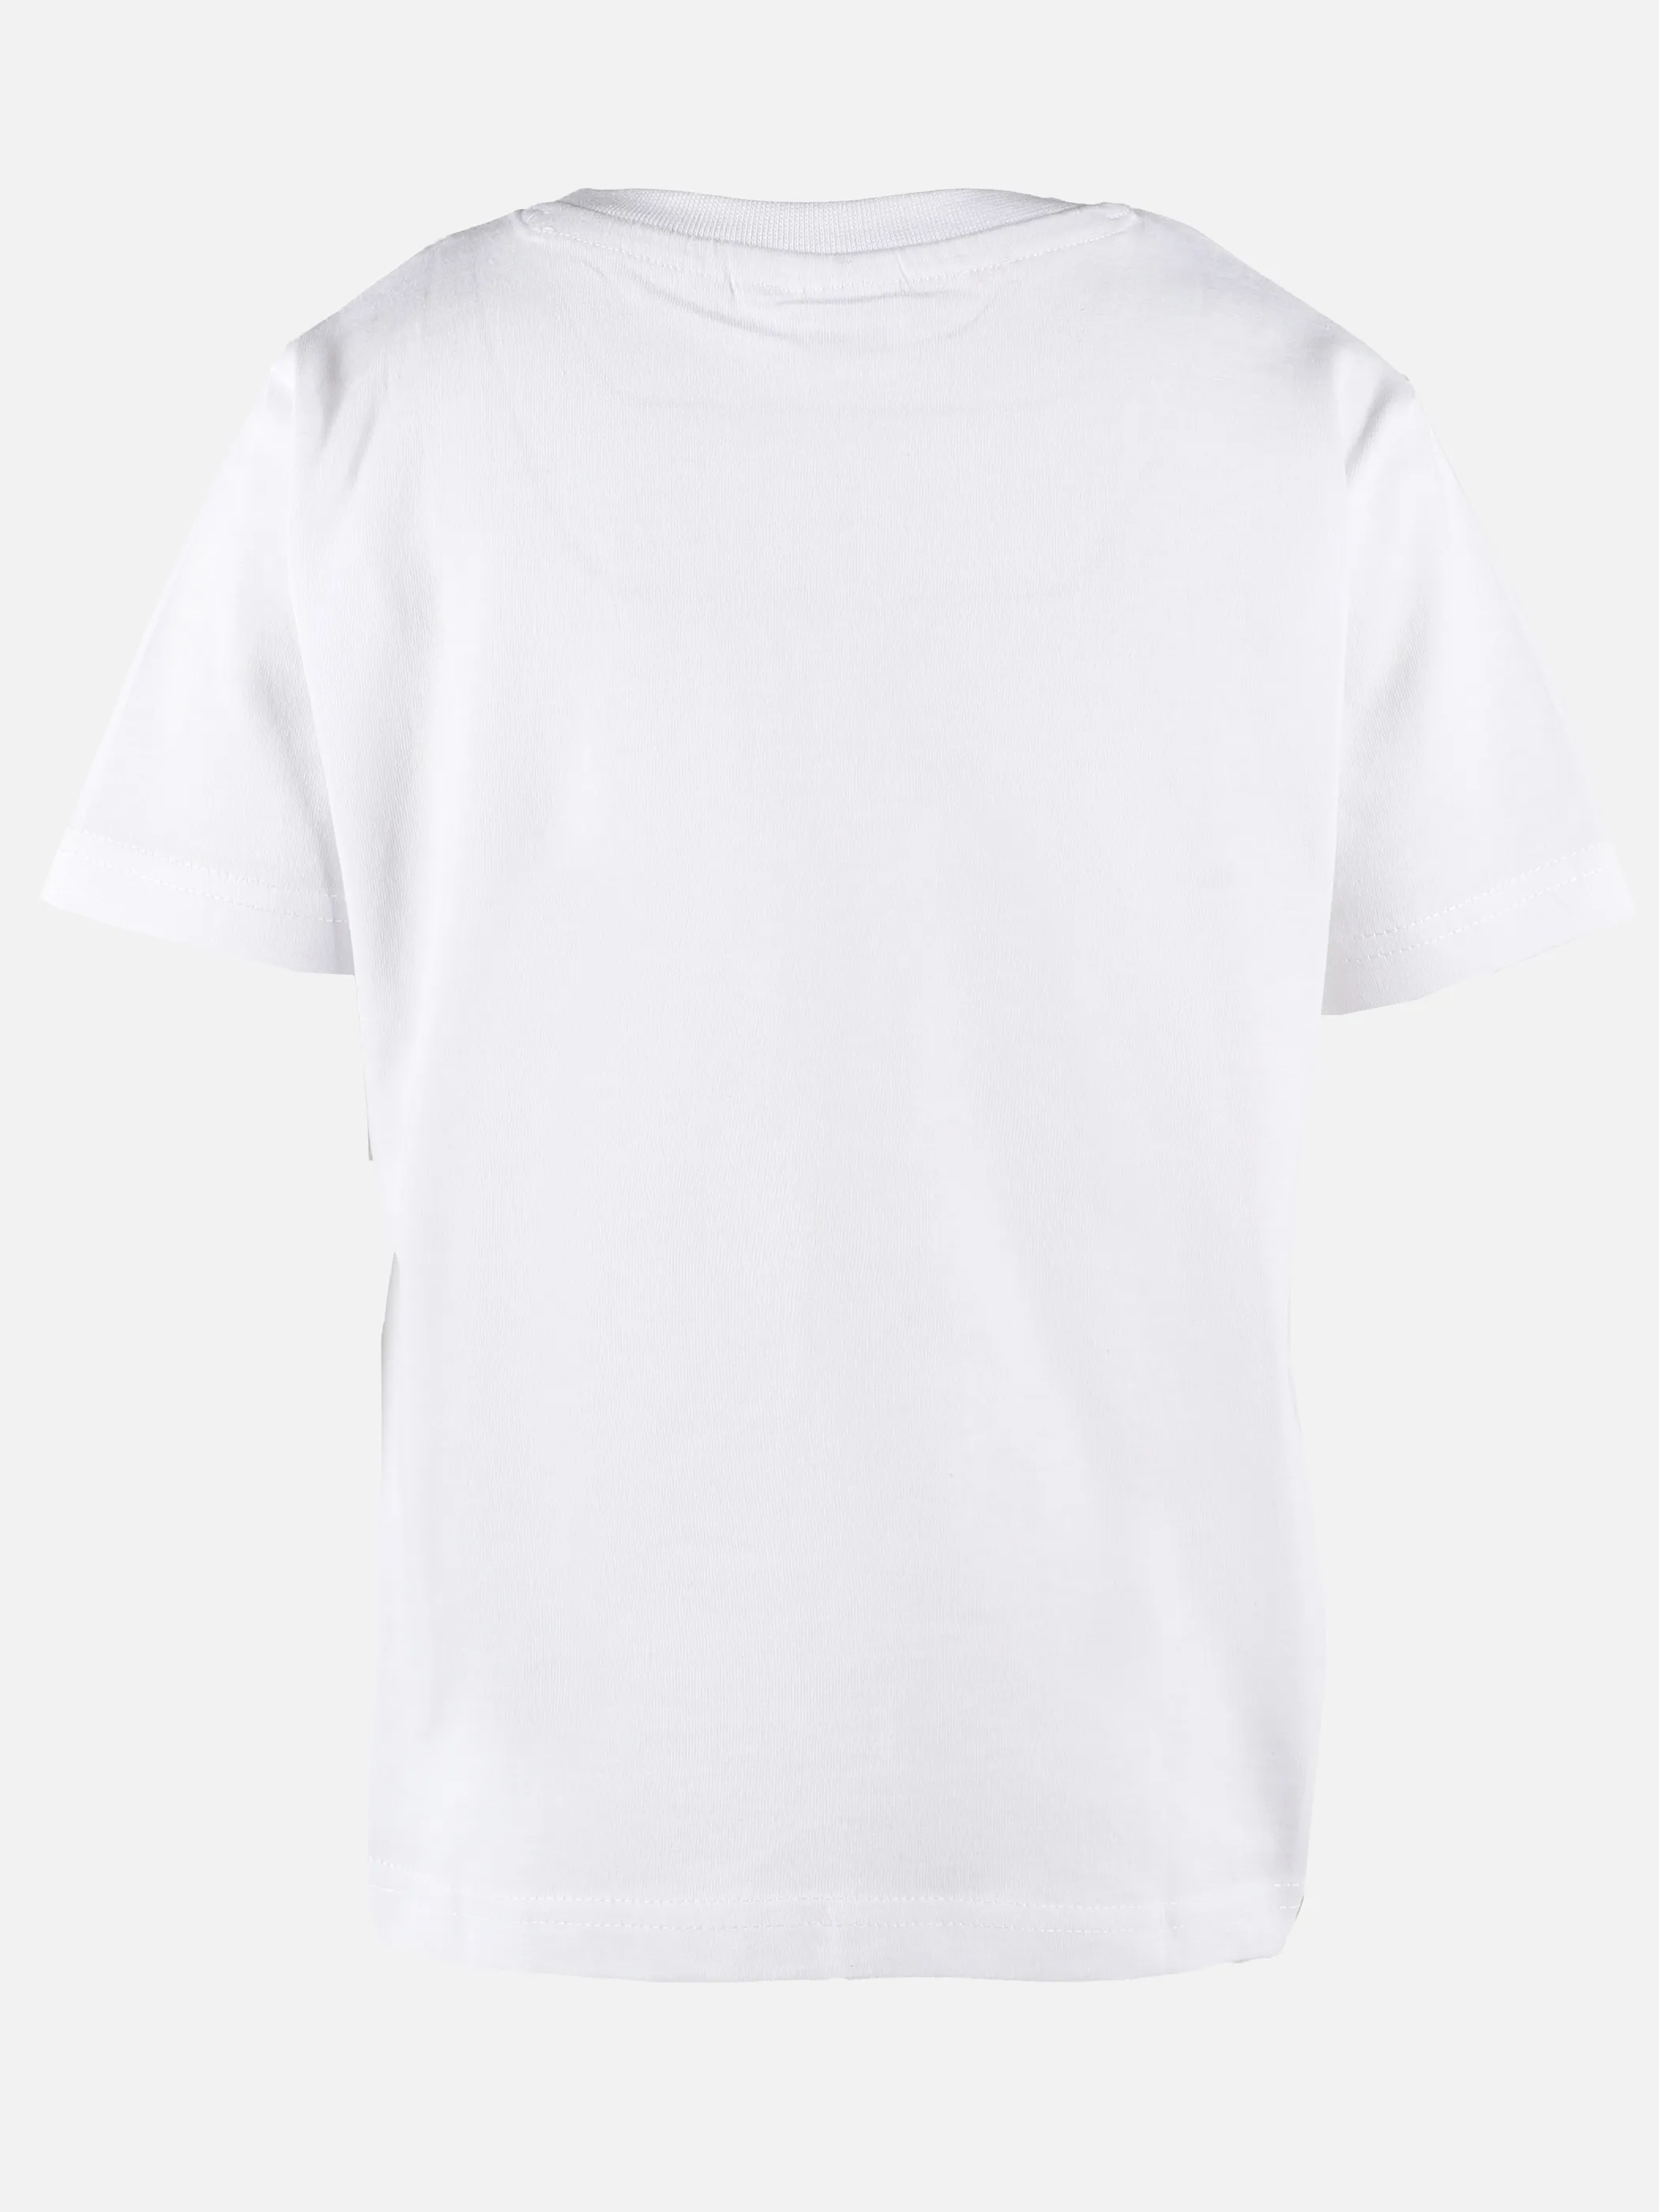 Hot Wheels KJ Hot Wheels T-Shirt mit Frontdruck in weiß Weiß 891624 WEIß 2